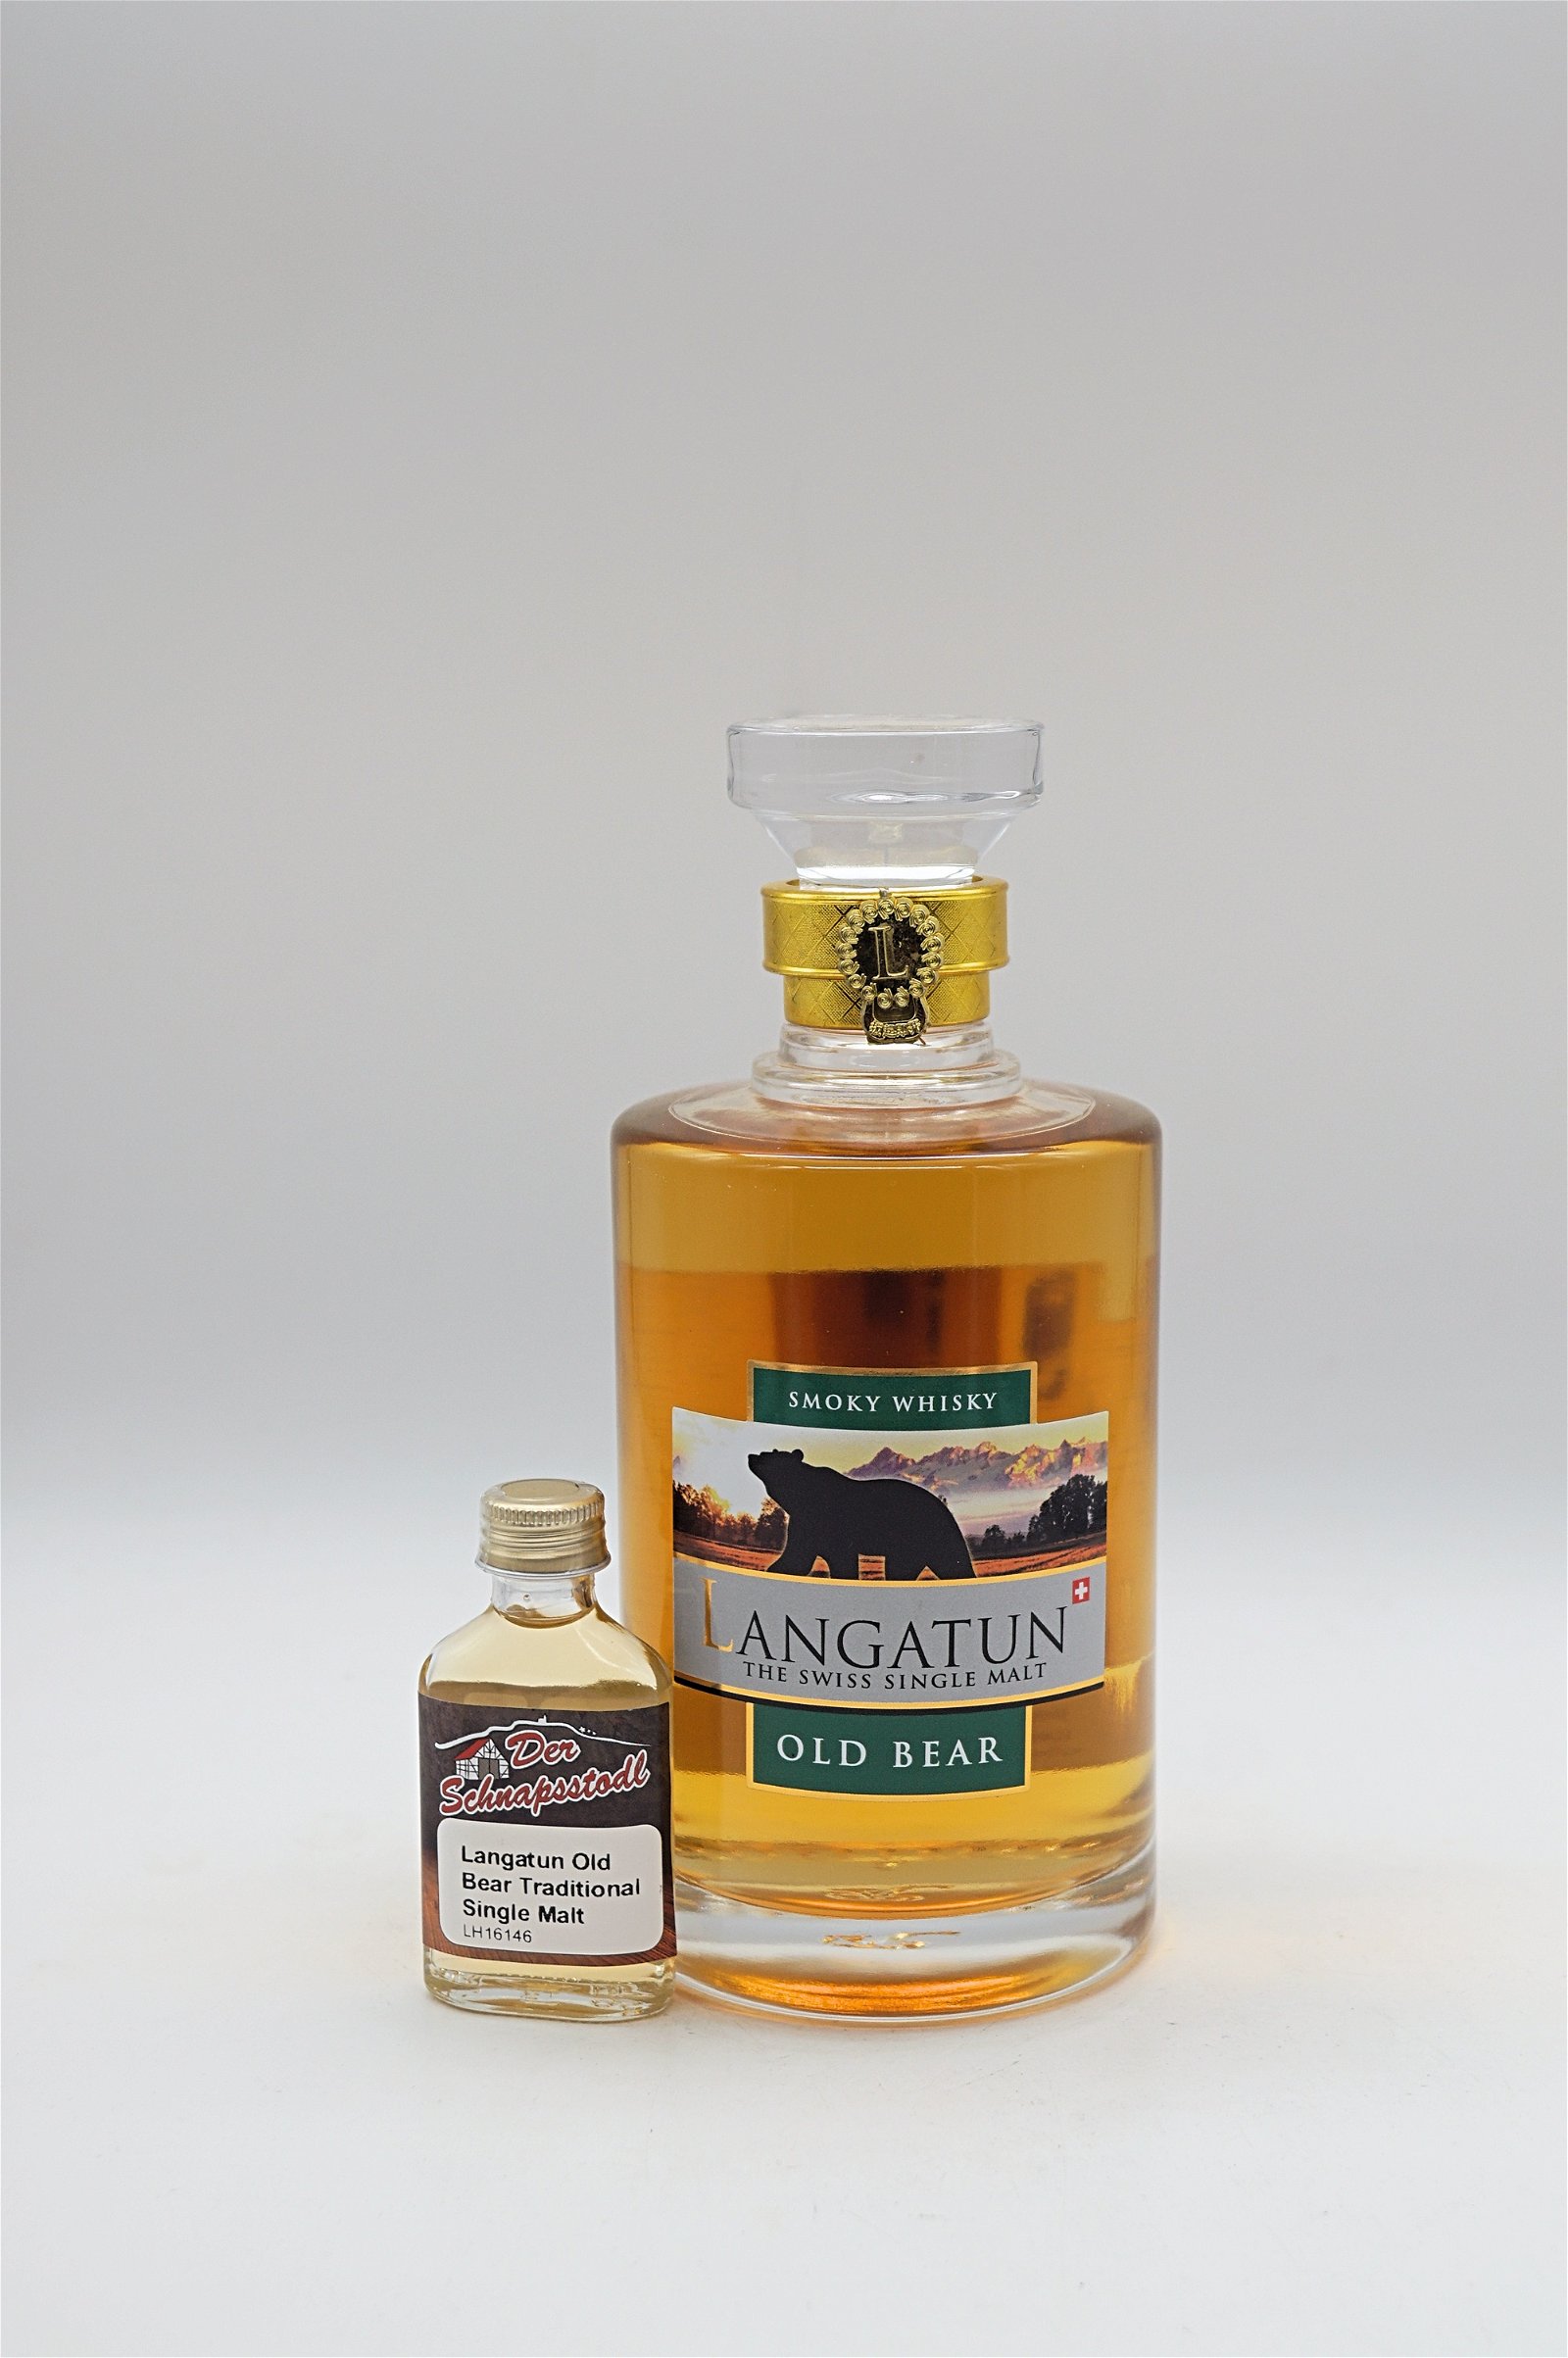 Langatun Old Bear Single Malt Whisky 20ml Sample